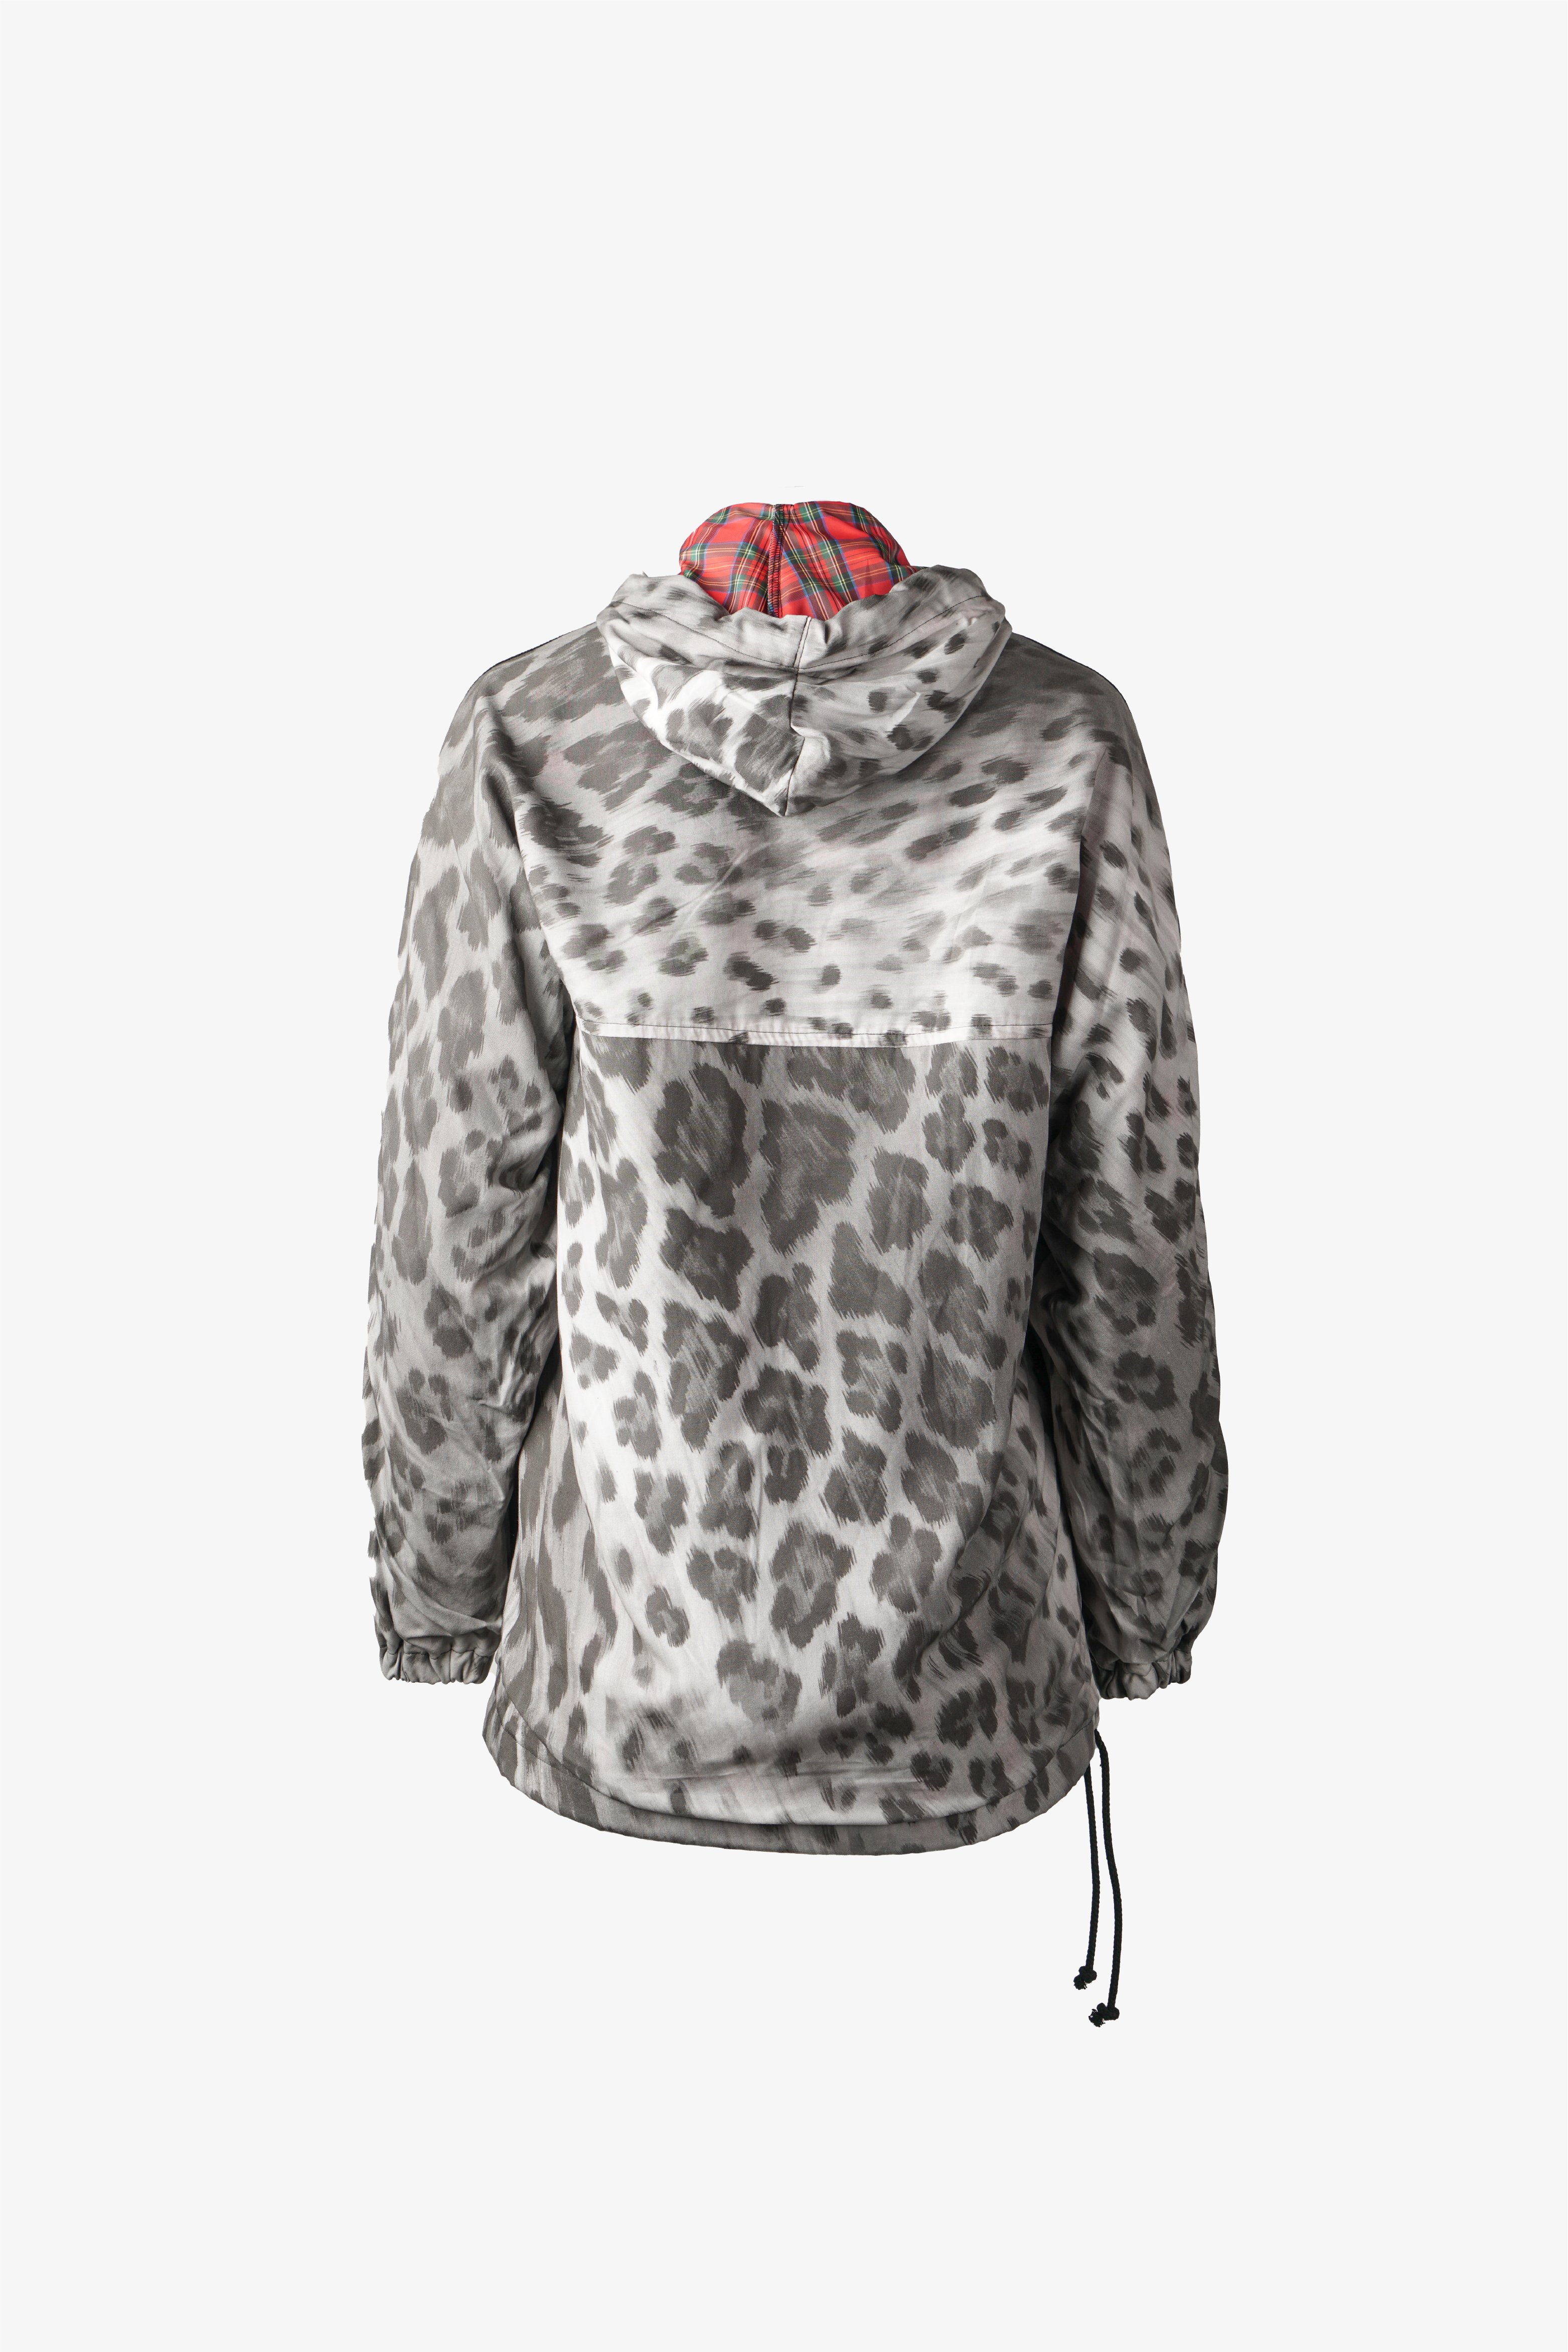 Selectshop FRAME - COMME DES GARÇONS TRICOT Jacket Outerwear Dubai